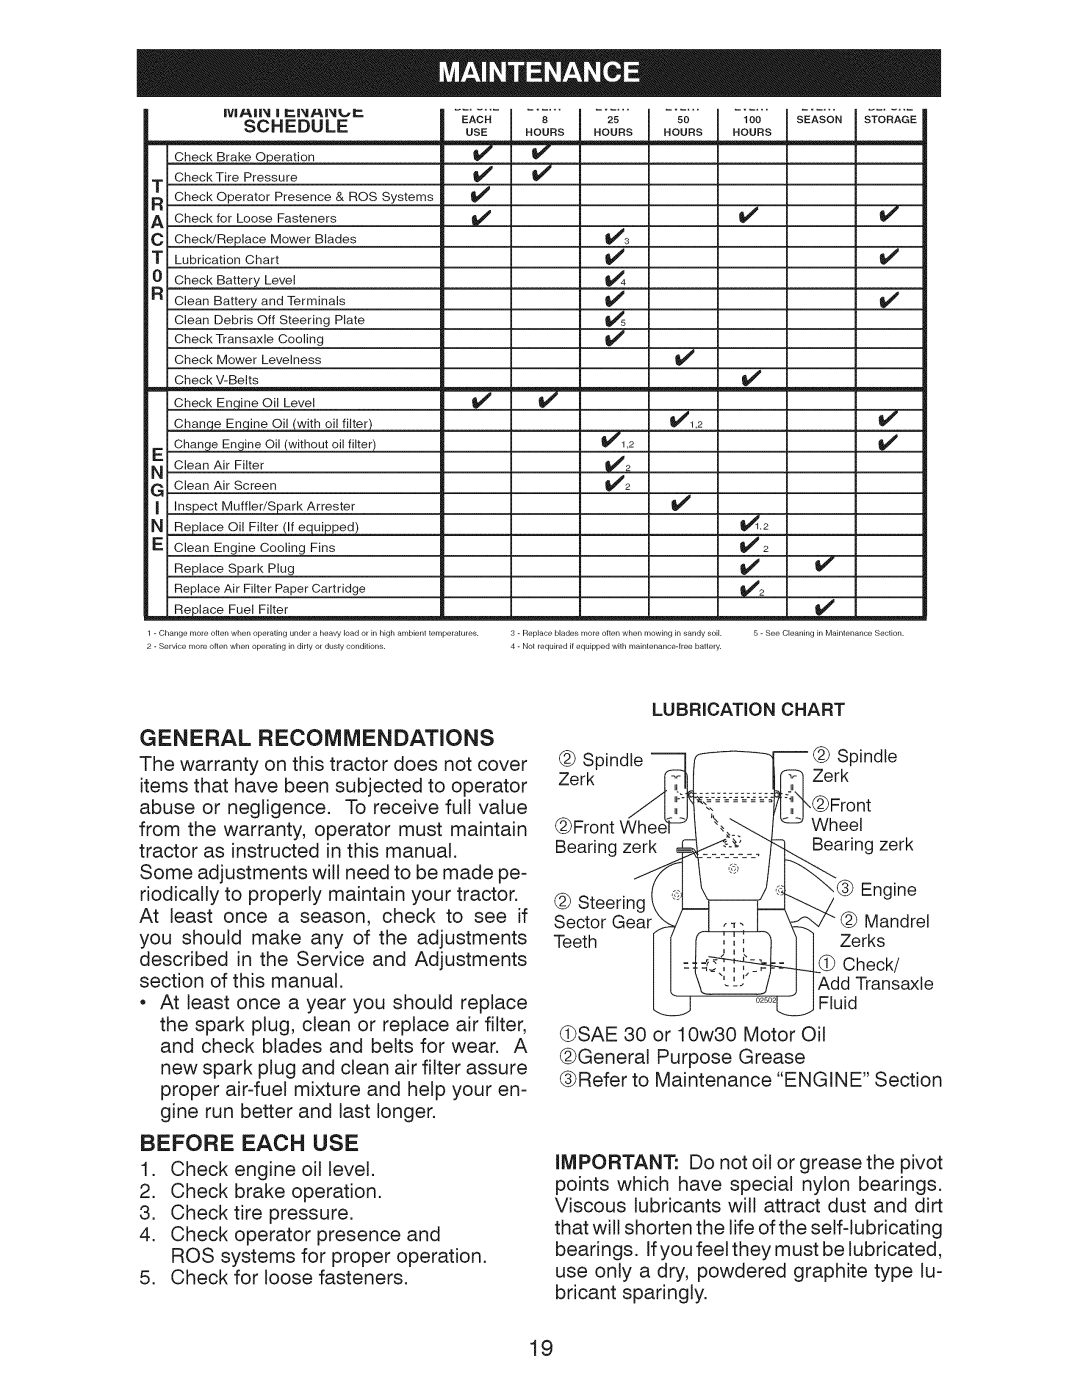 Craftsman 917.28955 owner manual V3 _4 V, v _2 v, General Recommendations, Before Each Use, Schedule, Lubrication 